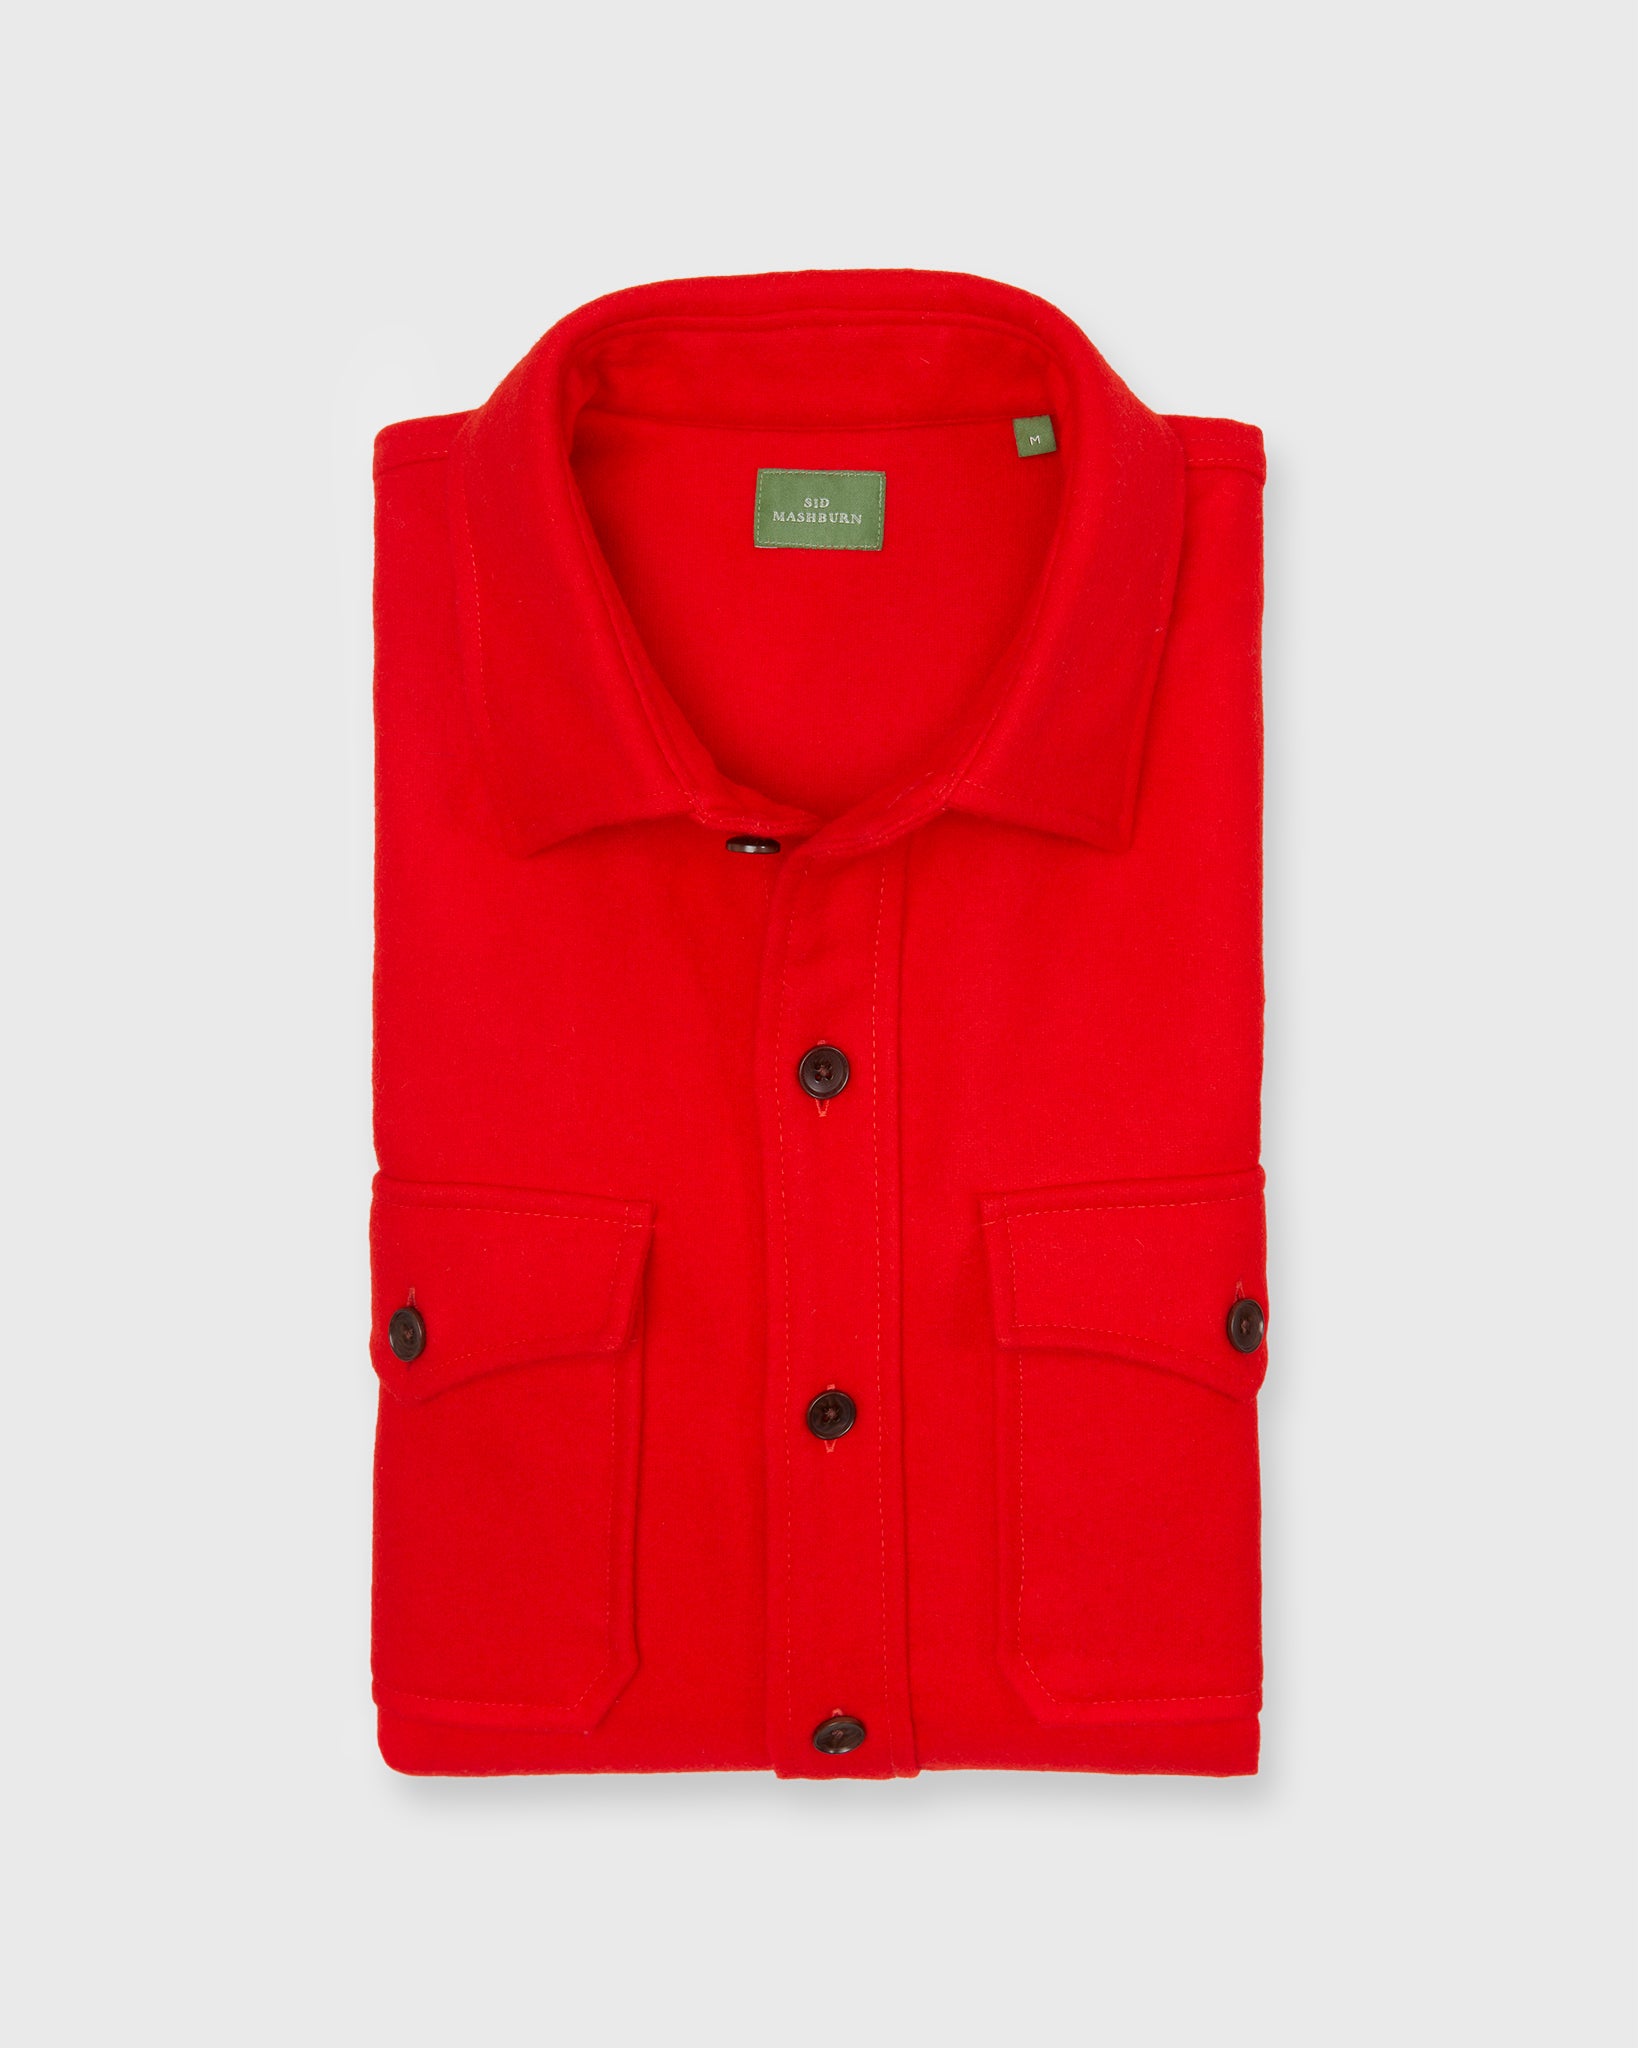 CPO Shirt in Scarlet Wool Melton